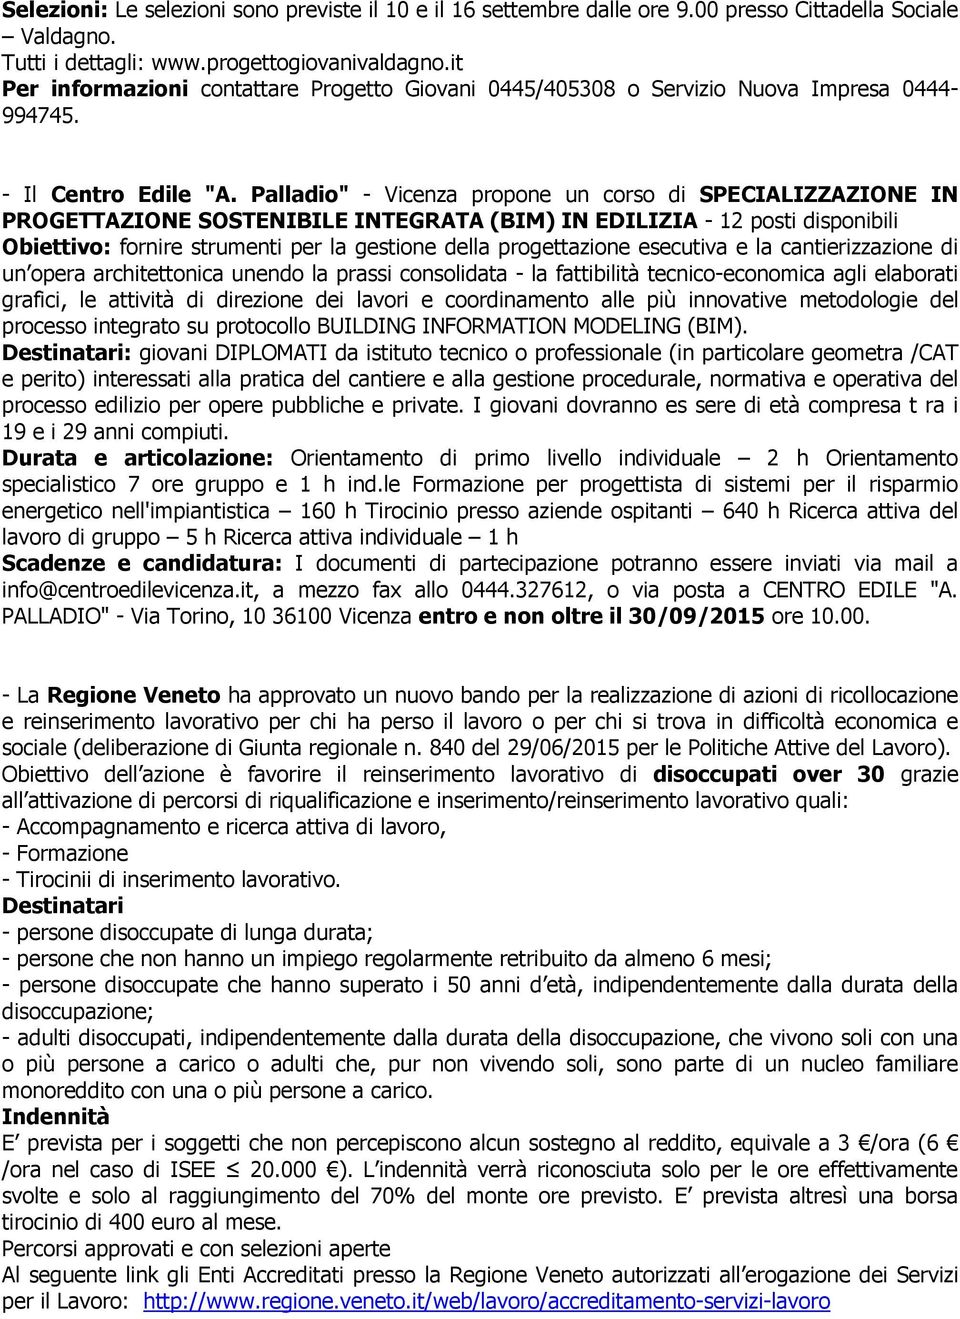 Palladio" - Vicenza propone un corso di SPECIALIZZAZIONE IN PROGETTAZIONE SOSTENIBILE INTEGRATA (BIM) IN EDILIZIA - 12 posti disponibili Obiettivo: fornire strumenti per la gestione della